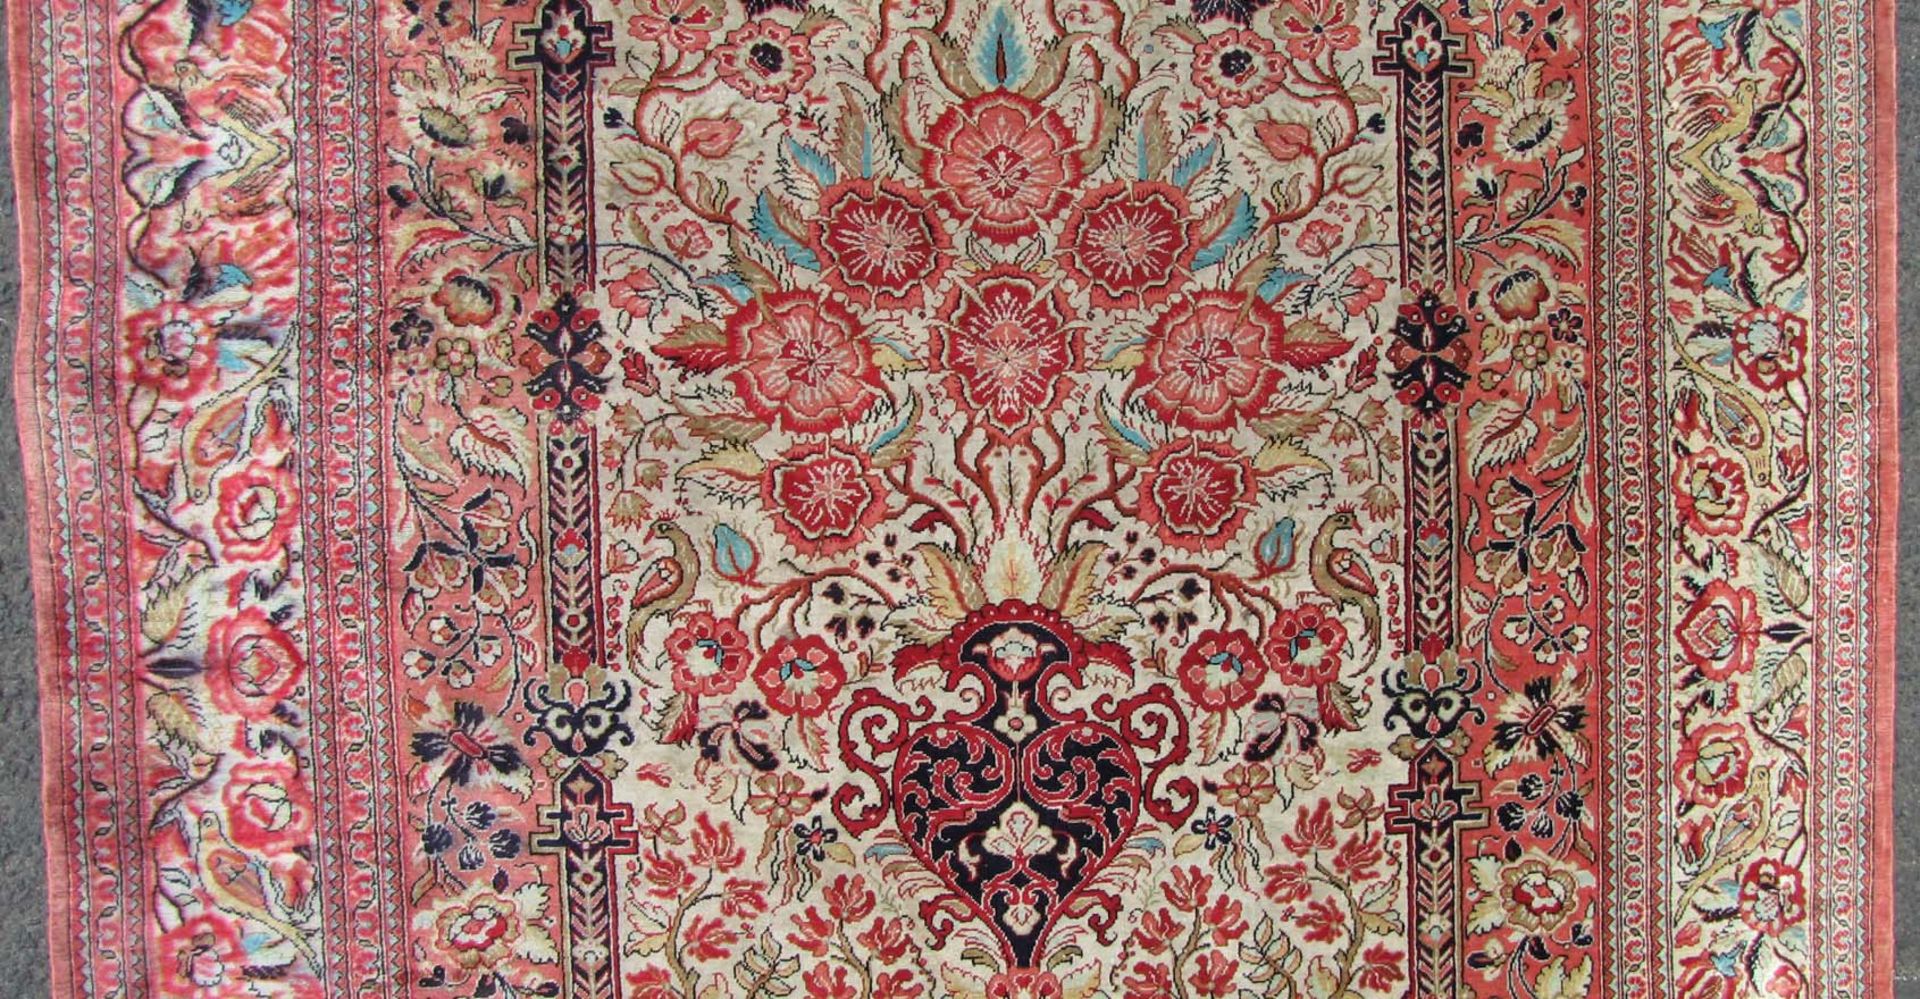 Ghom Seidenteppich. Gebetsteppich. Iran. Sehr feine Knüpfung.152 cm x 105 cm. Handgeknüpft. Seide - Bild 3 aus 6